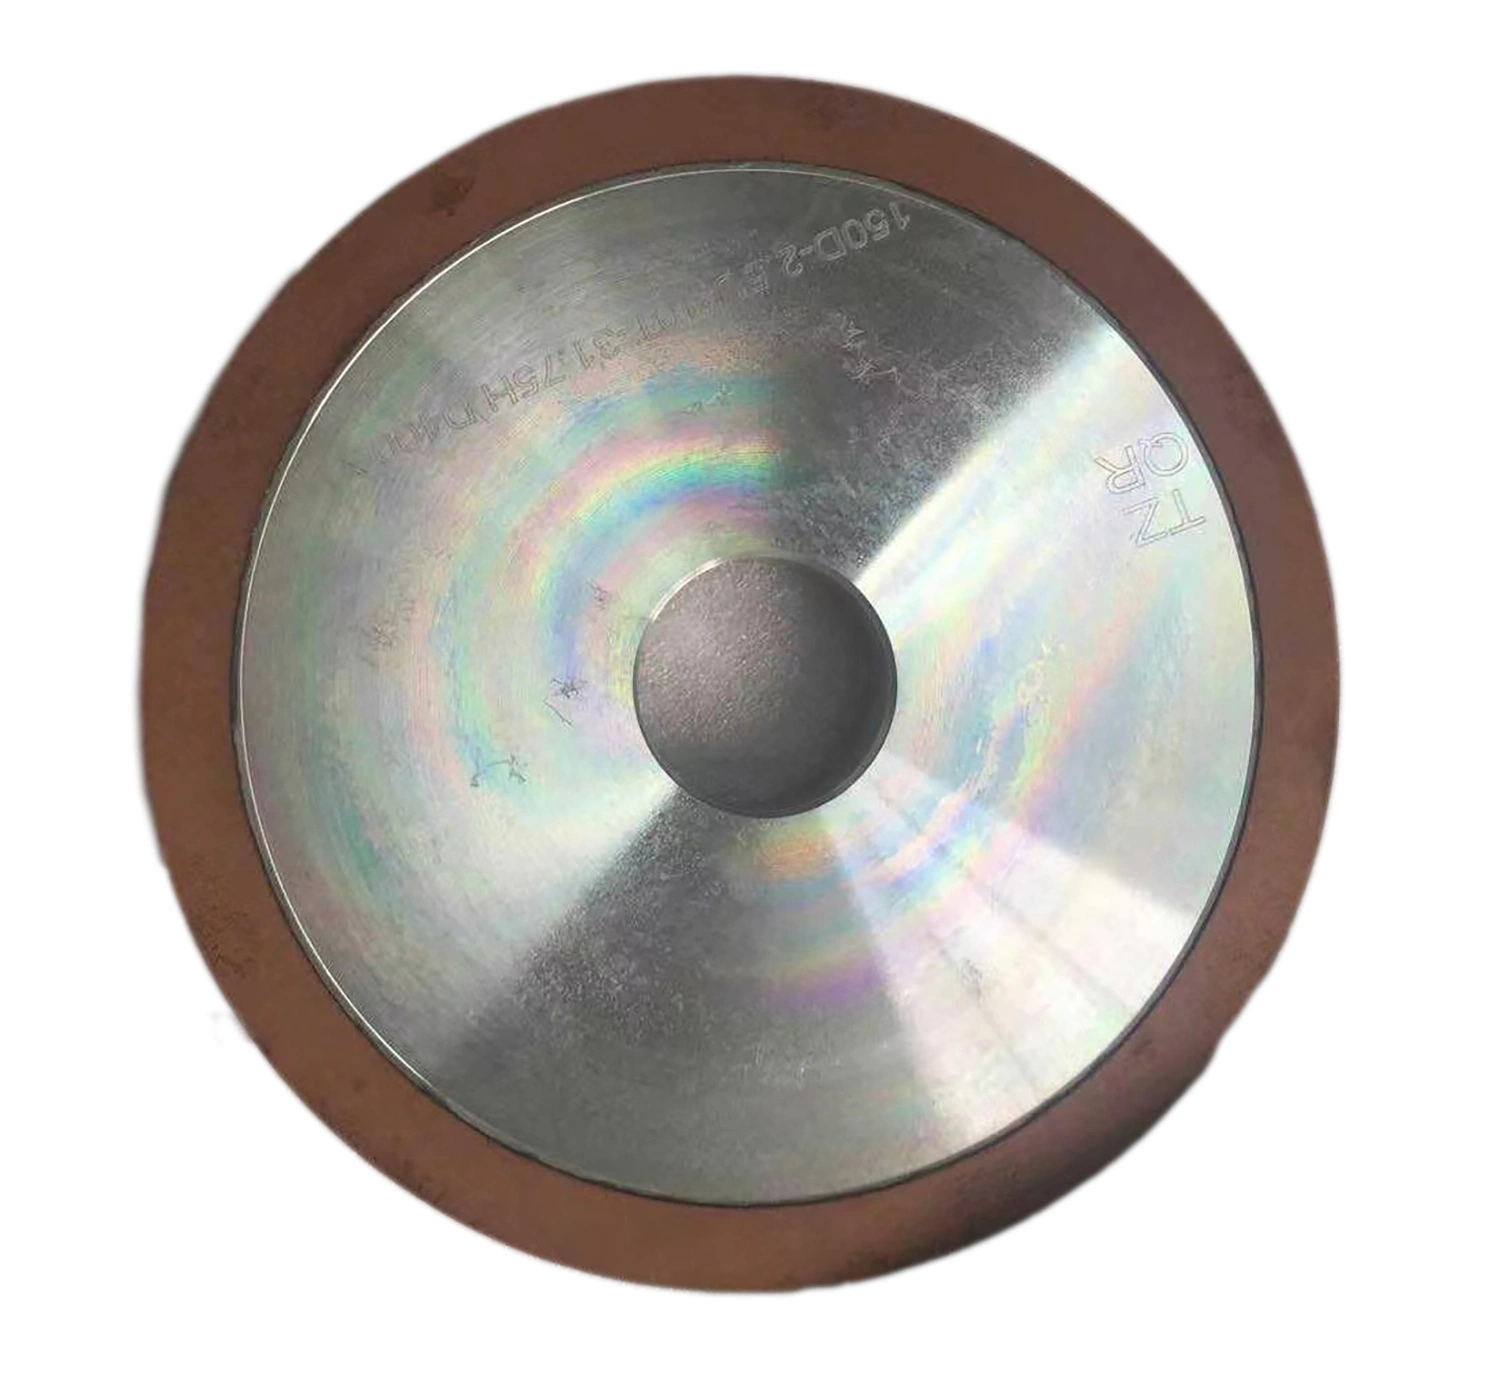 عجلة طحن ماسية من الماس مسطحولةً من ورق مسطحٍ من أجل تركيز الزجاج بنسبة 100% بالنسبة لالكربيد المعدن الصلب Tungsten الفولاذ الماس Vitried العجلة لشحذ الكاشطة